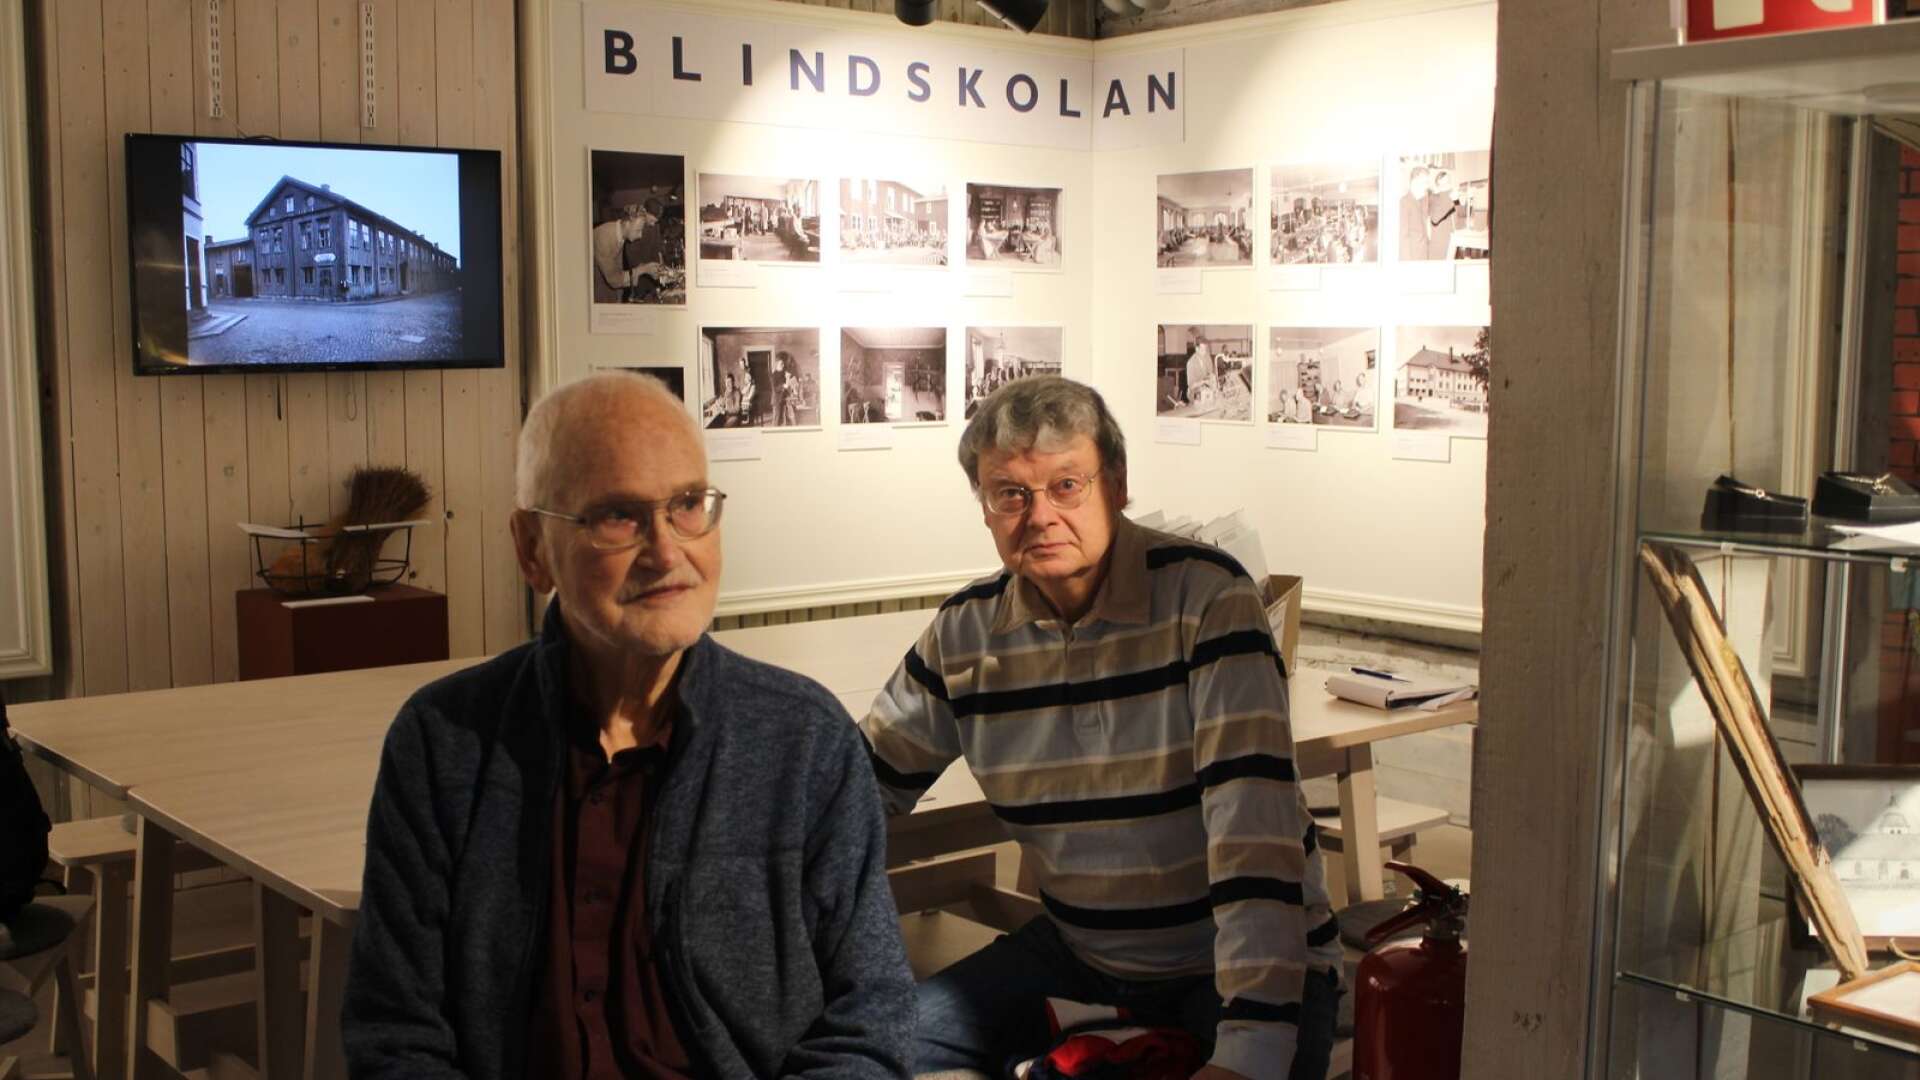 Mats Holmstrand och Erik Fasth har gjort en film om gruvarbetare och Blindskolan, som visas på Kristinehamns historiska museum.